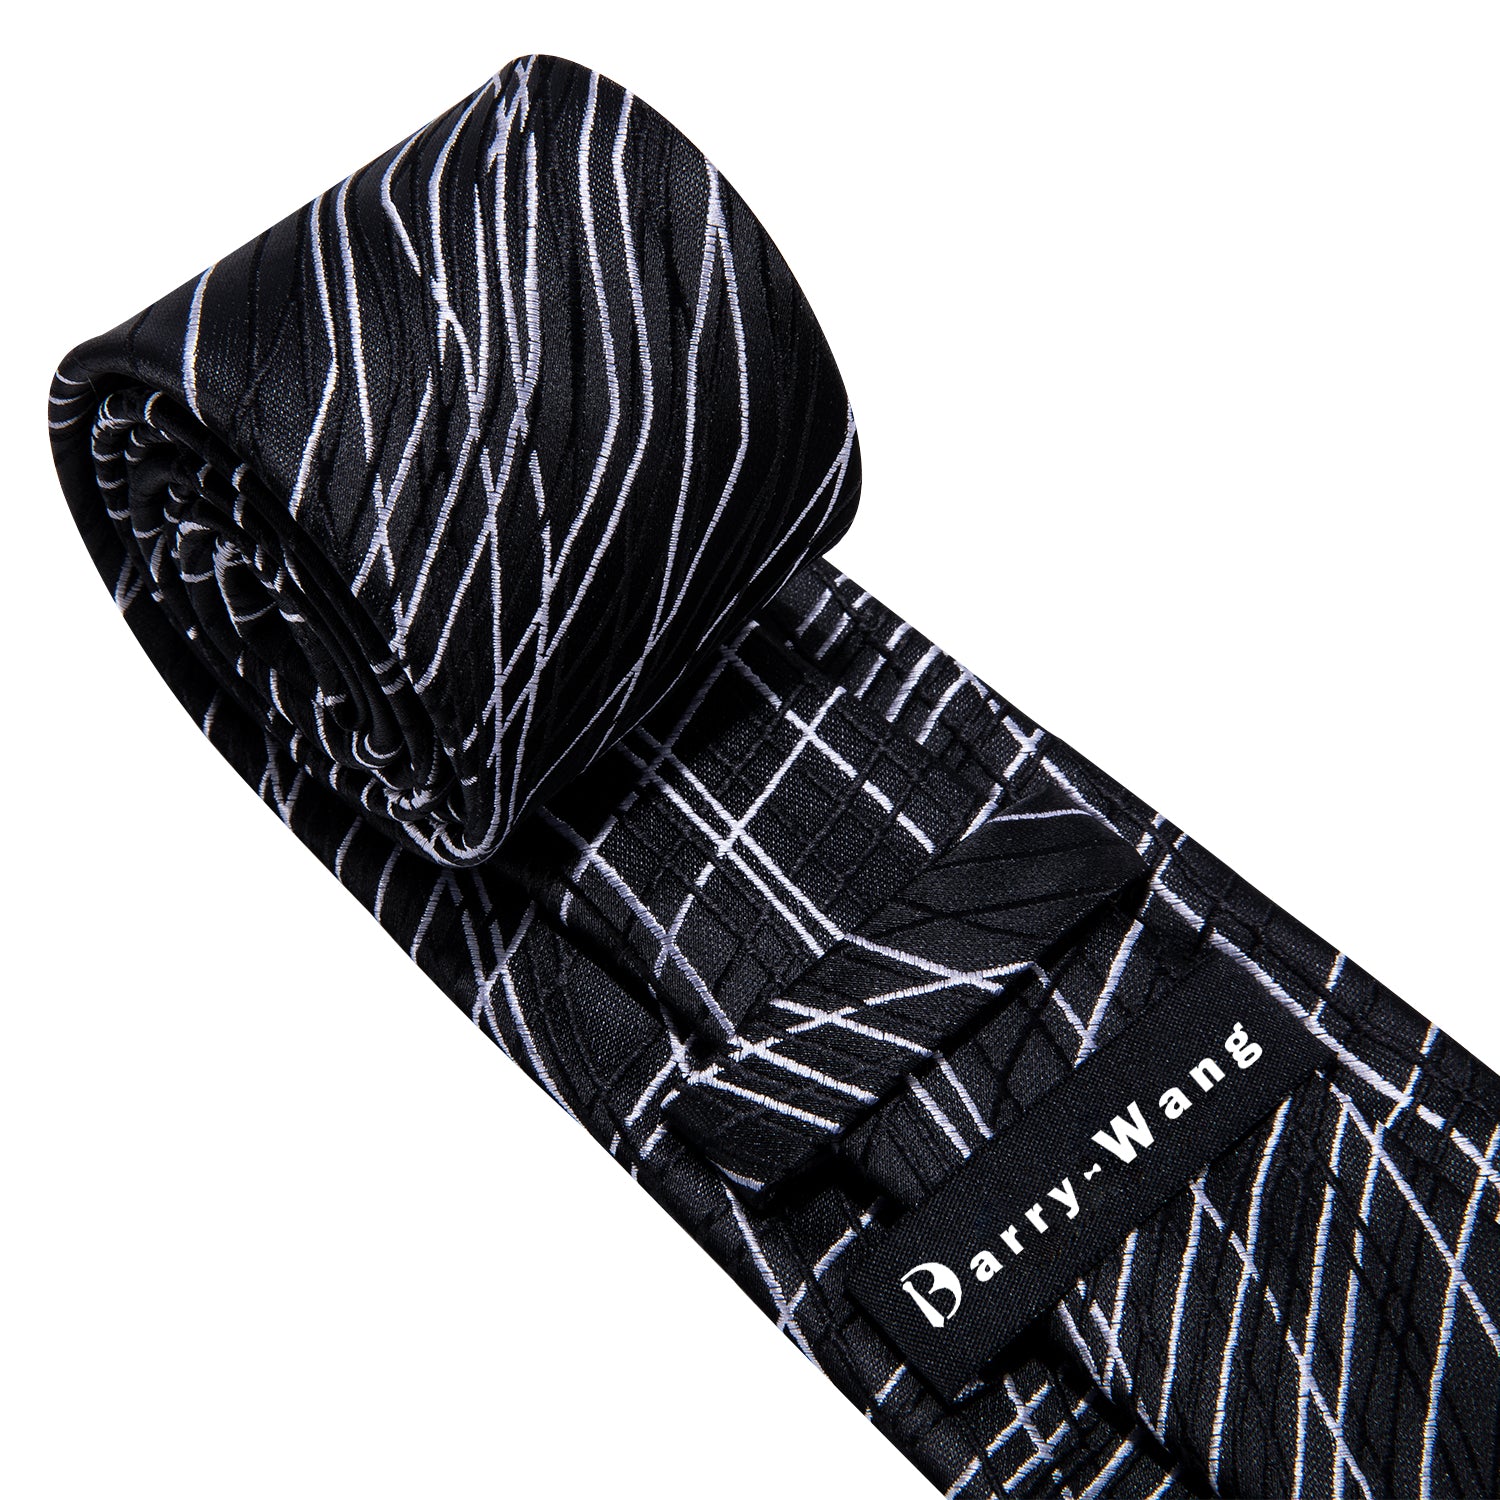 Black White Novelty Silk Tie Hanky Cufflinks Set